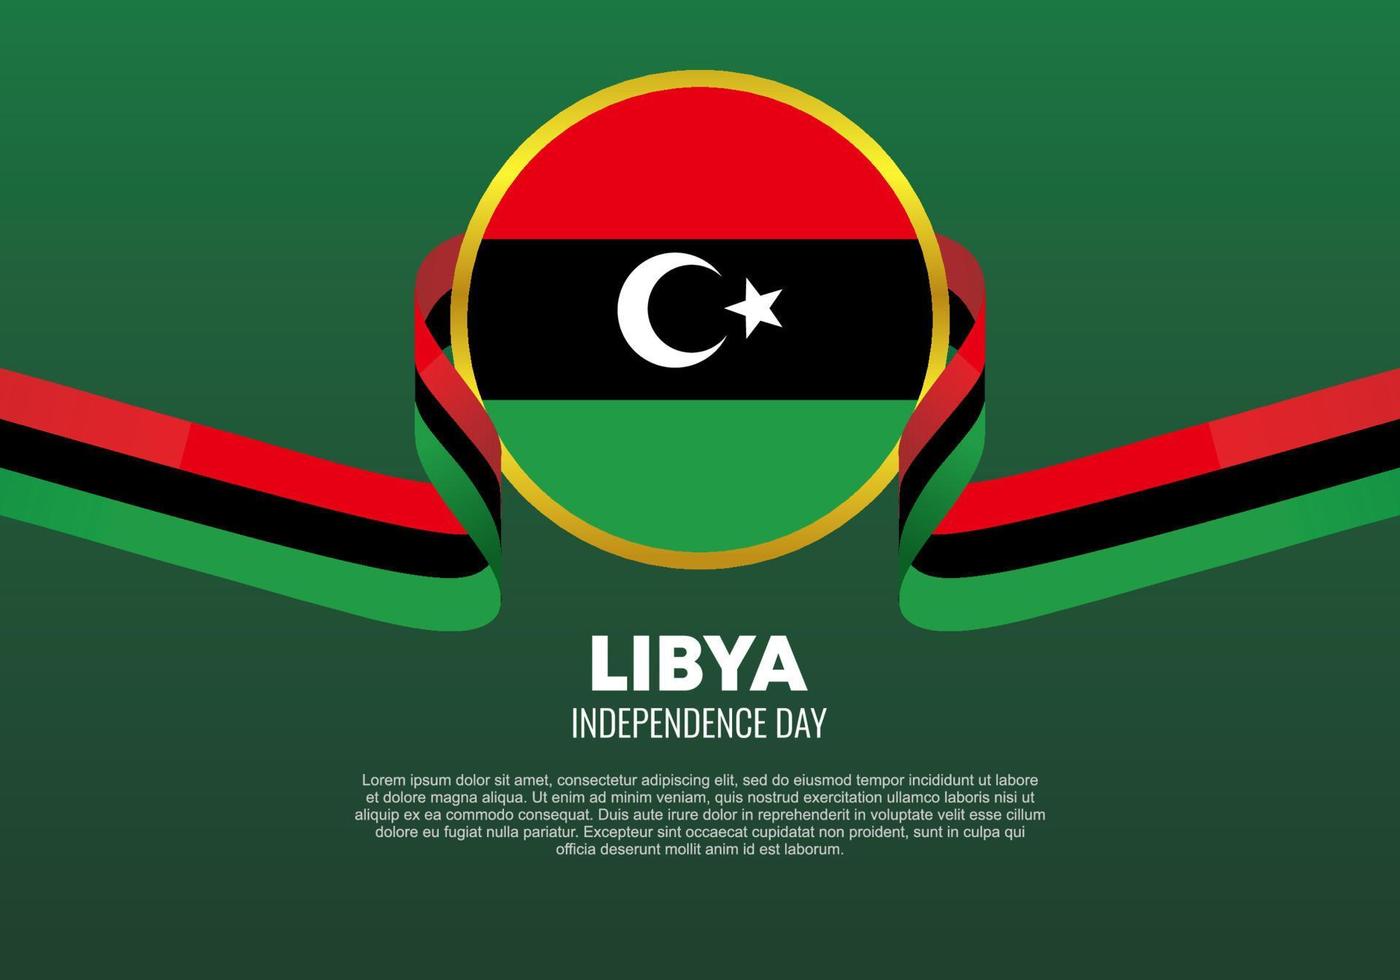 cartaz de banner de fundo do dia da independência da Líbia para celebração em 24 de dezembro. vetor